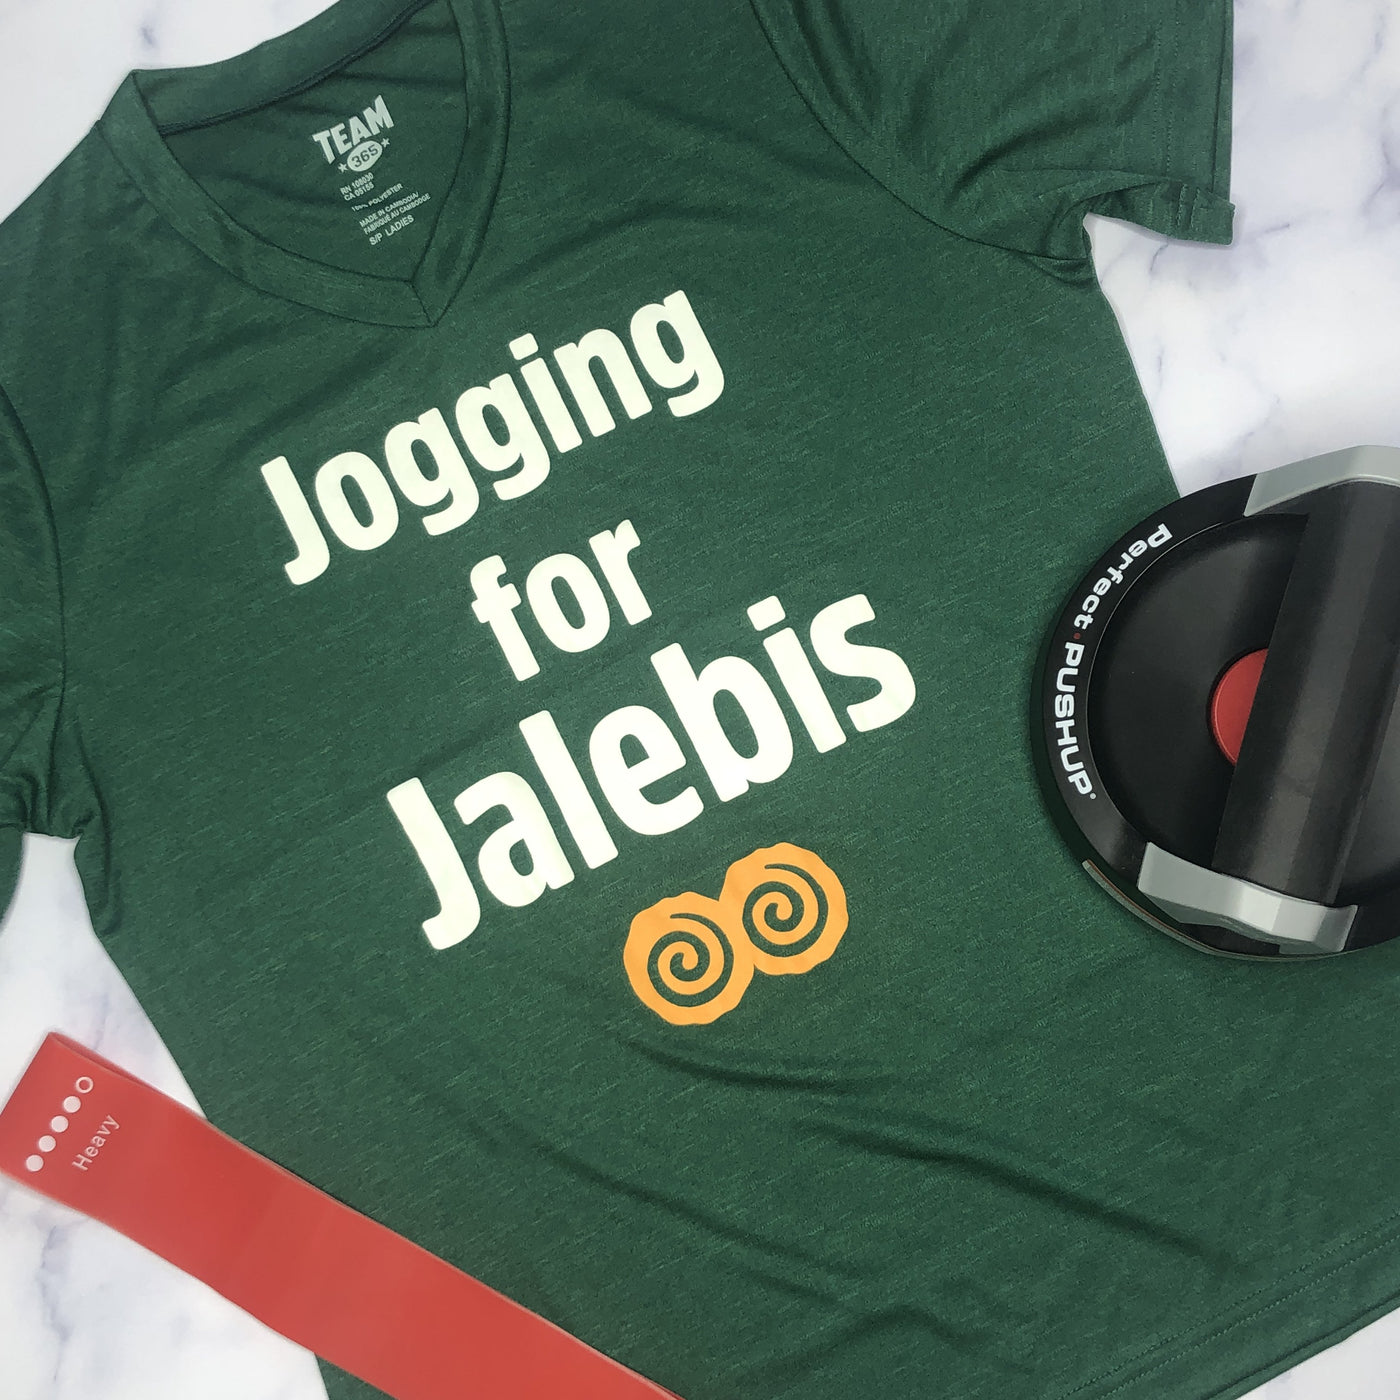 Jogging for Jalebis V-Neck